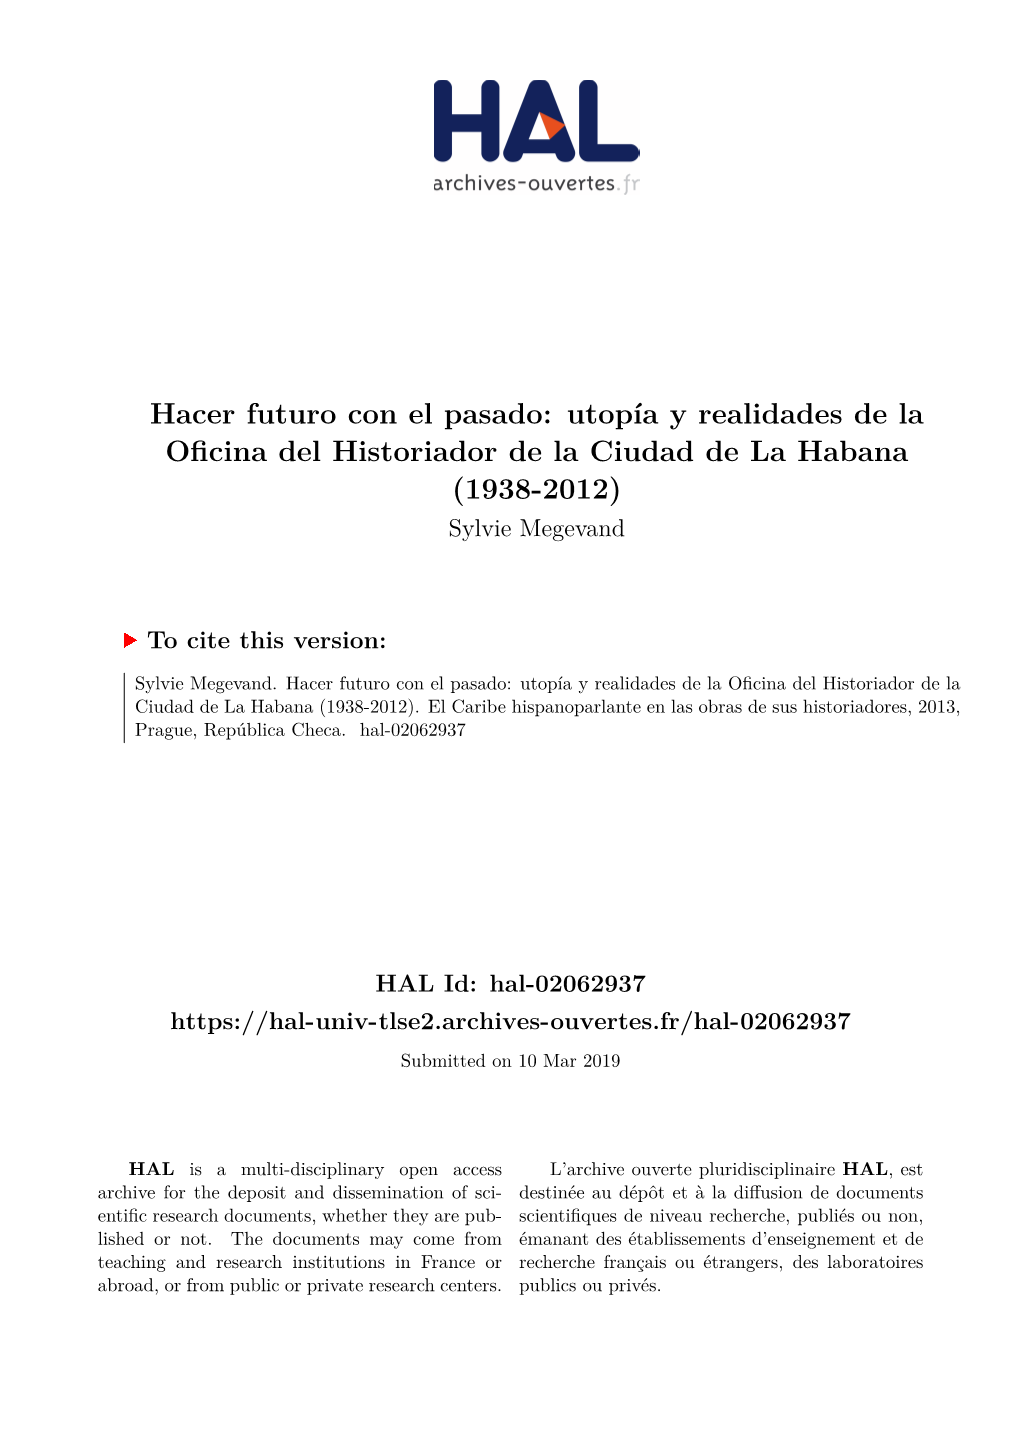 Hacer Futuro Con El Pasado: Utopía Y Realidades De La Oficina Del Historiador De La Ciudad De La Habana (1938-2012) Sylvie Megevand